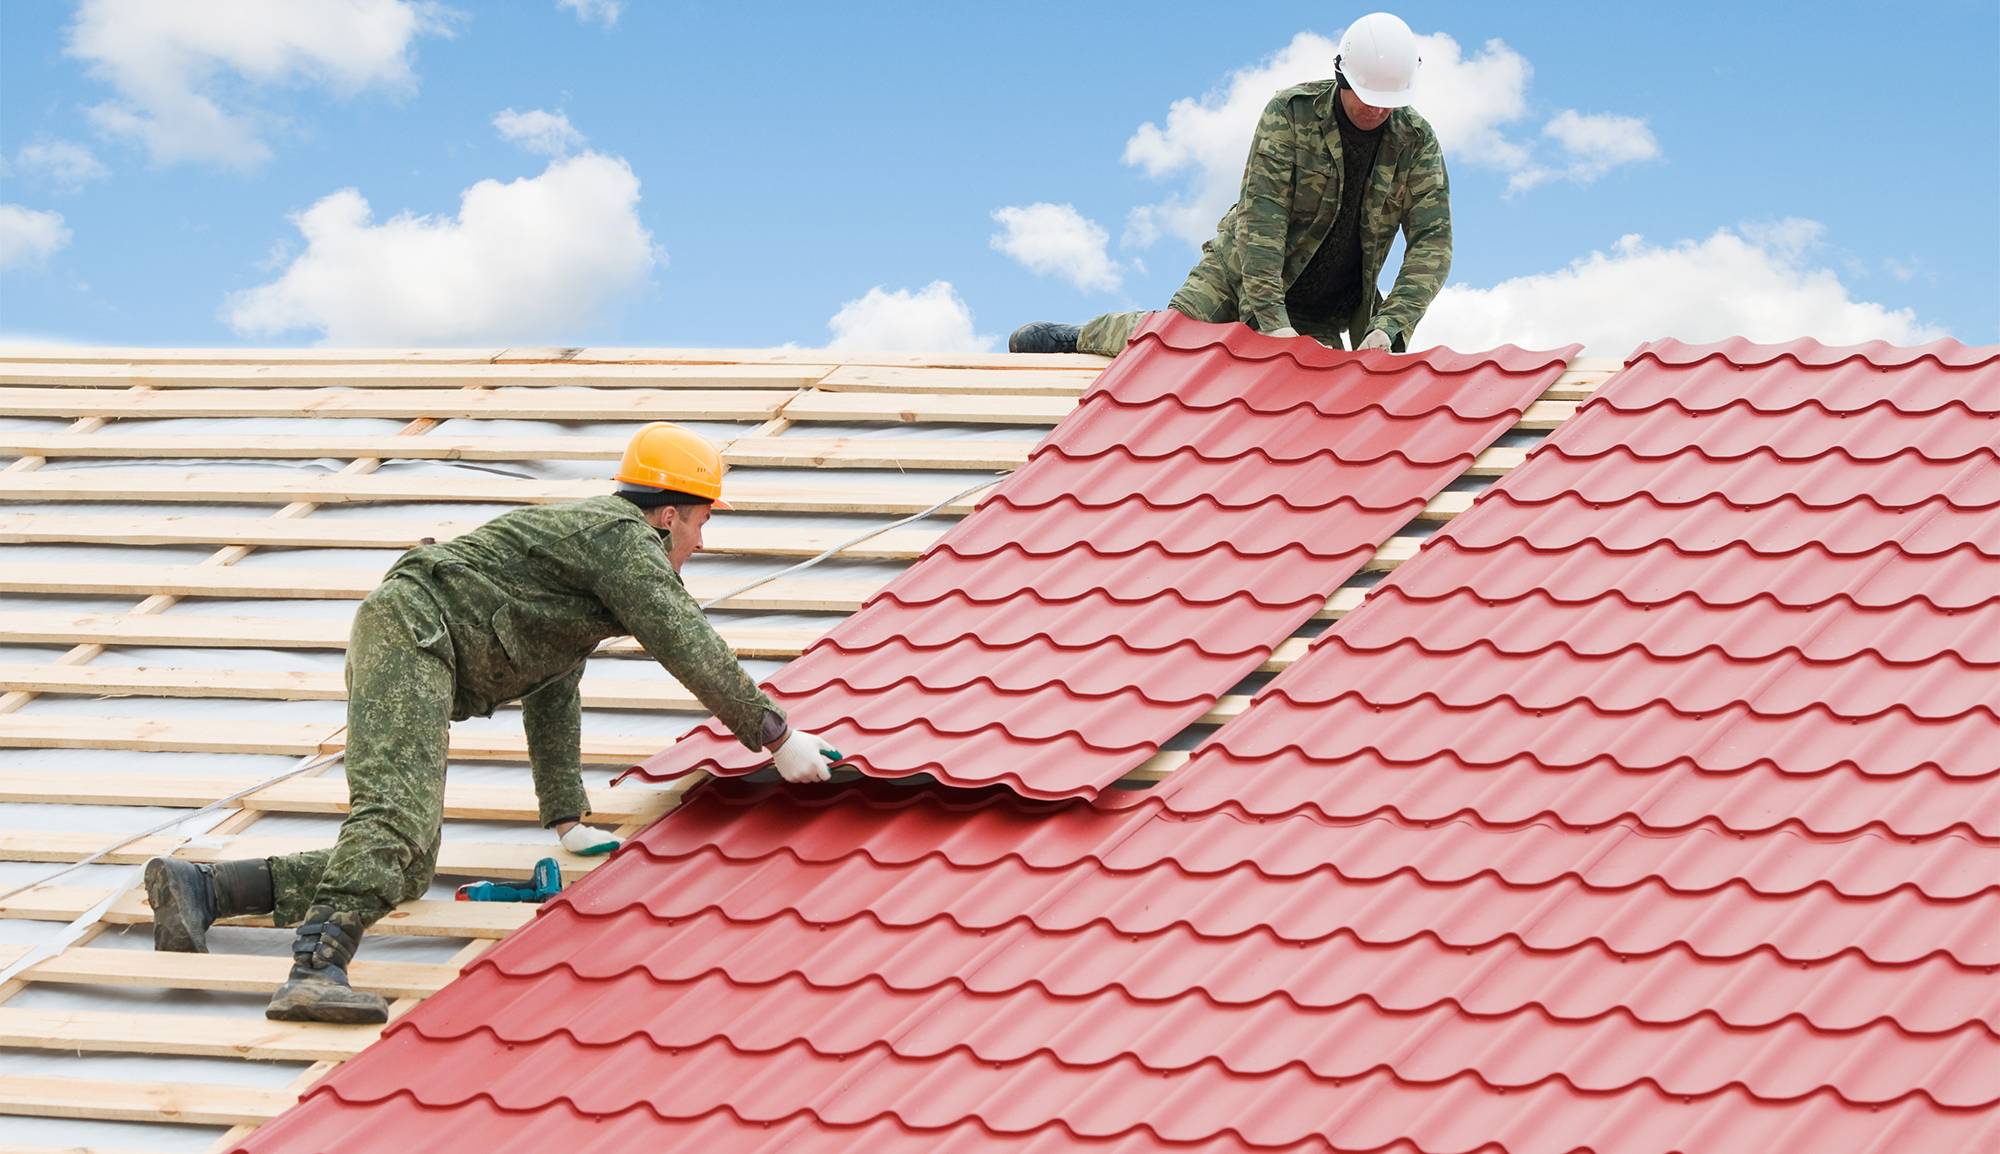 Чем покрыть крышу дома чтобы было качественно и недорого